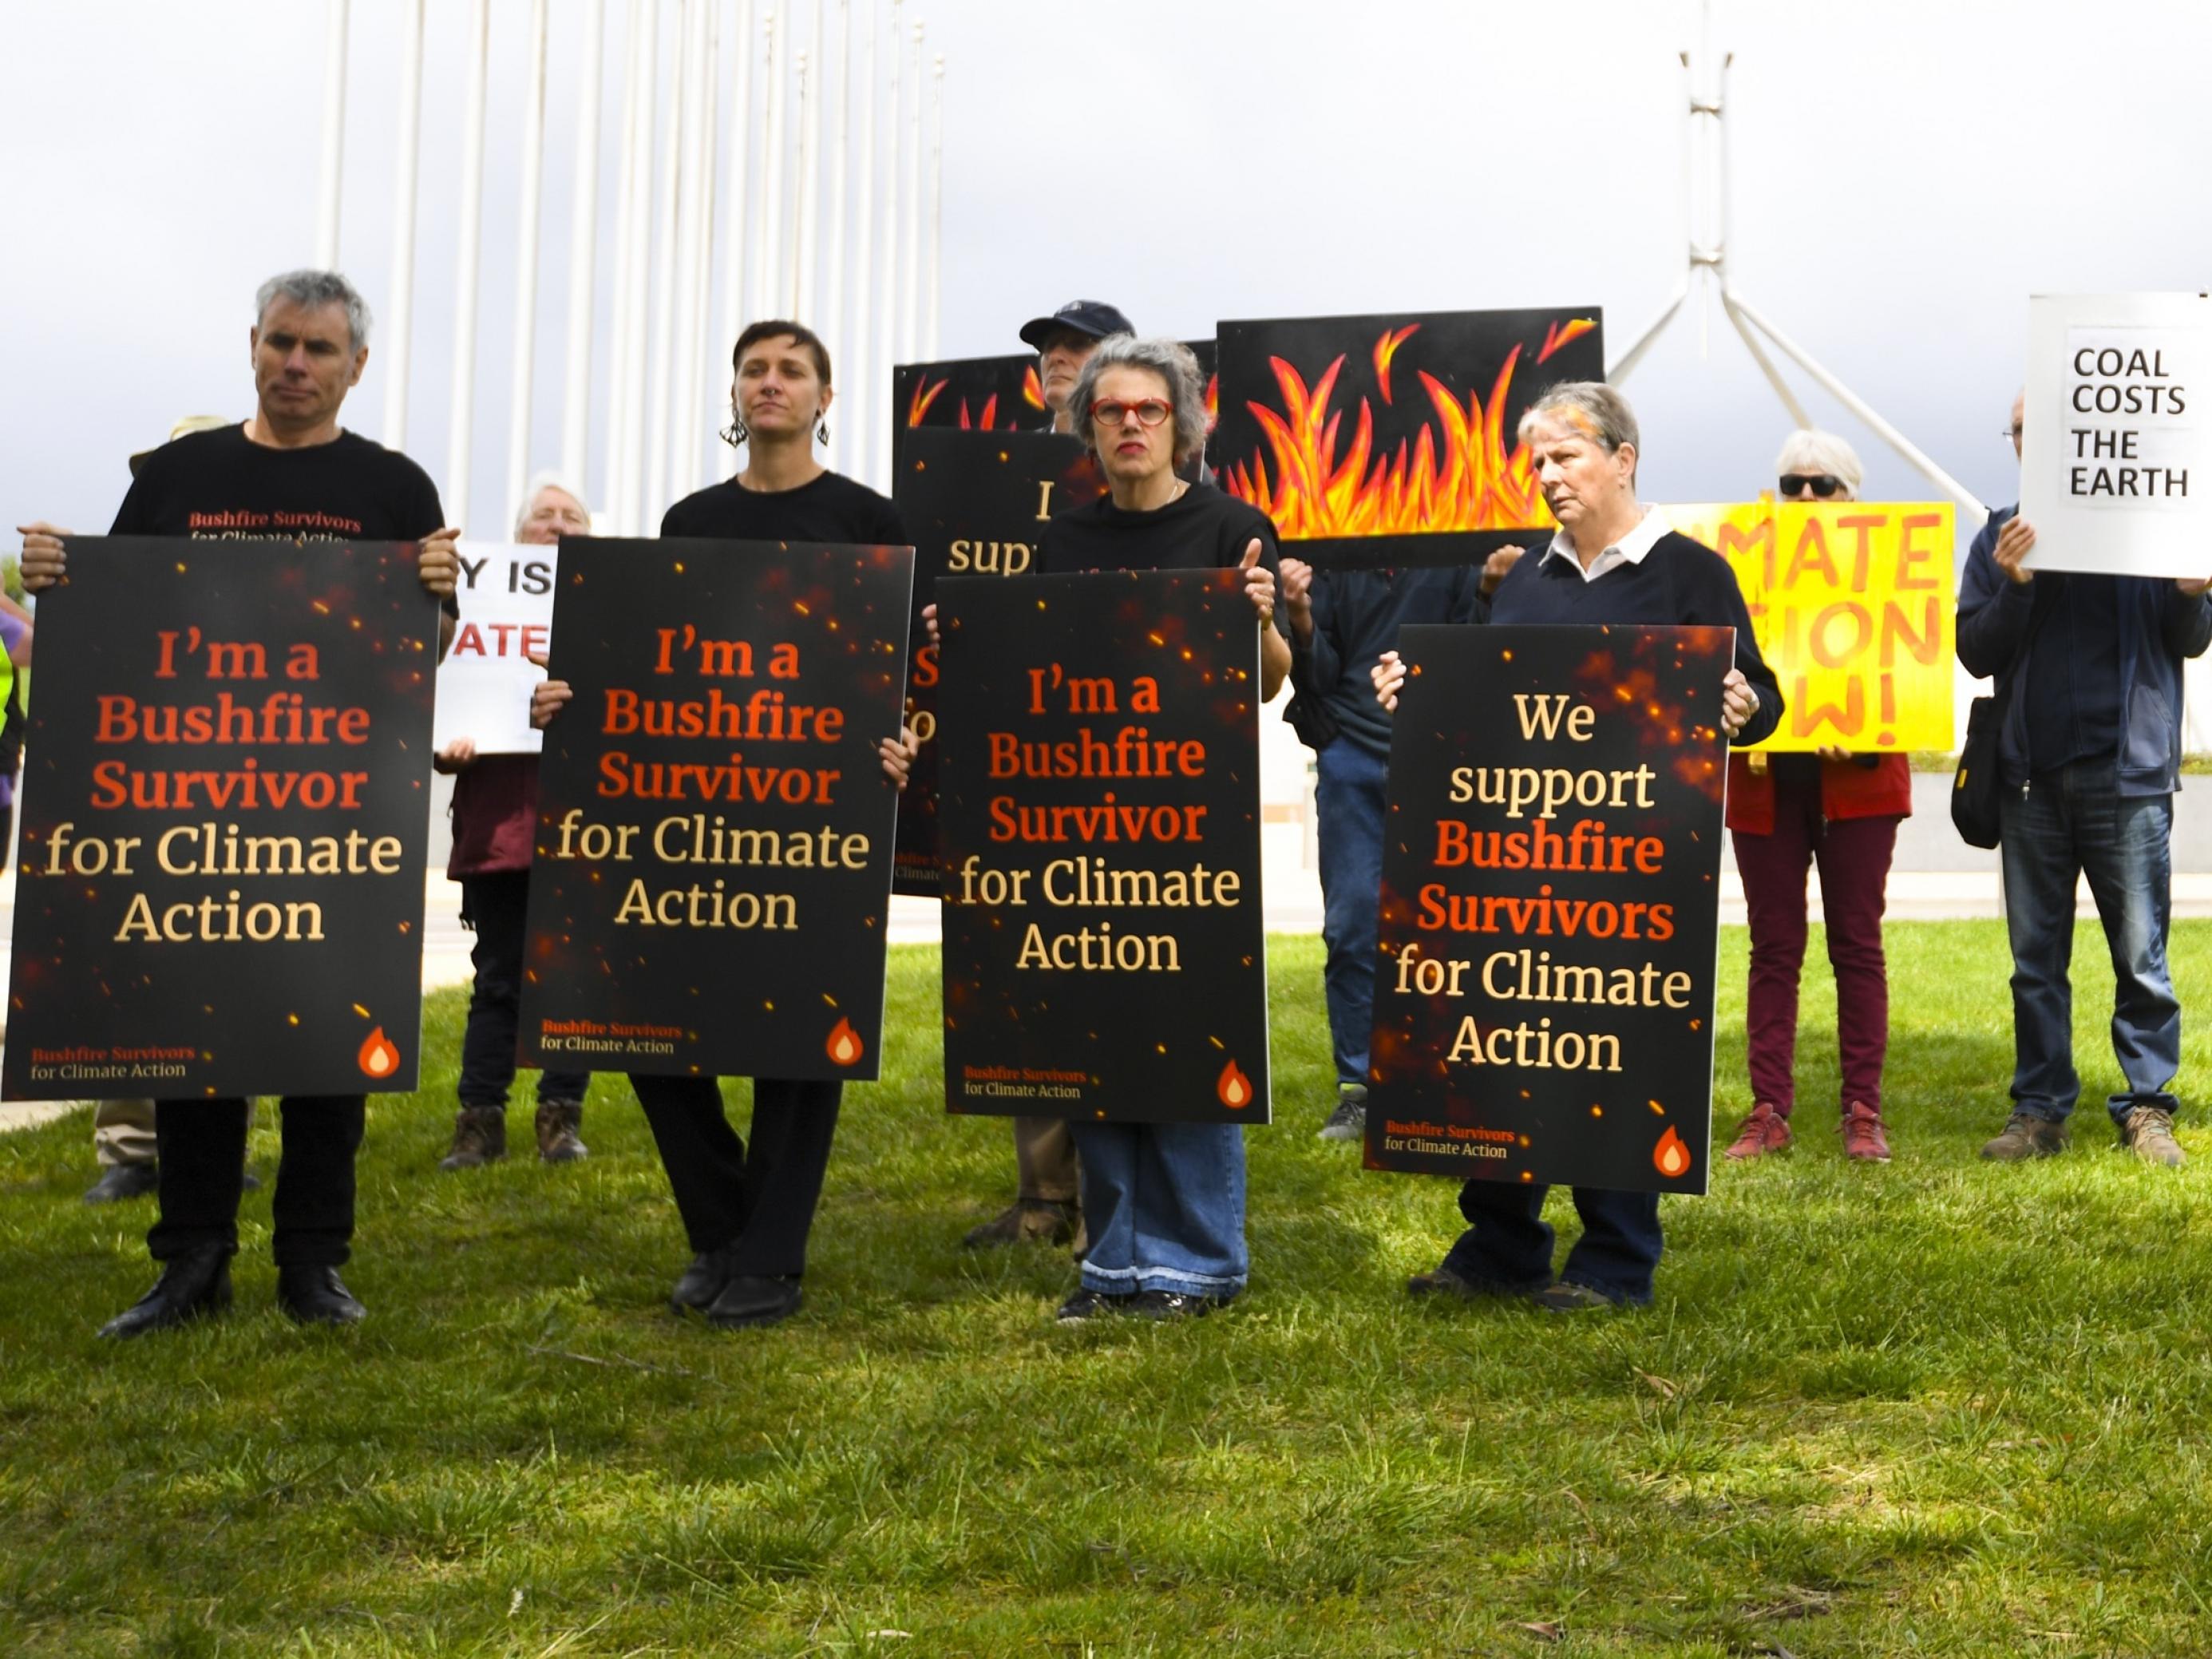 Demonstrantïnnen, die sich als Überlebende der Bushfire bezeichnen, fordern mit Schildern, dass die Regierung beim Klimaschutz endlich handelt.